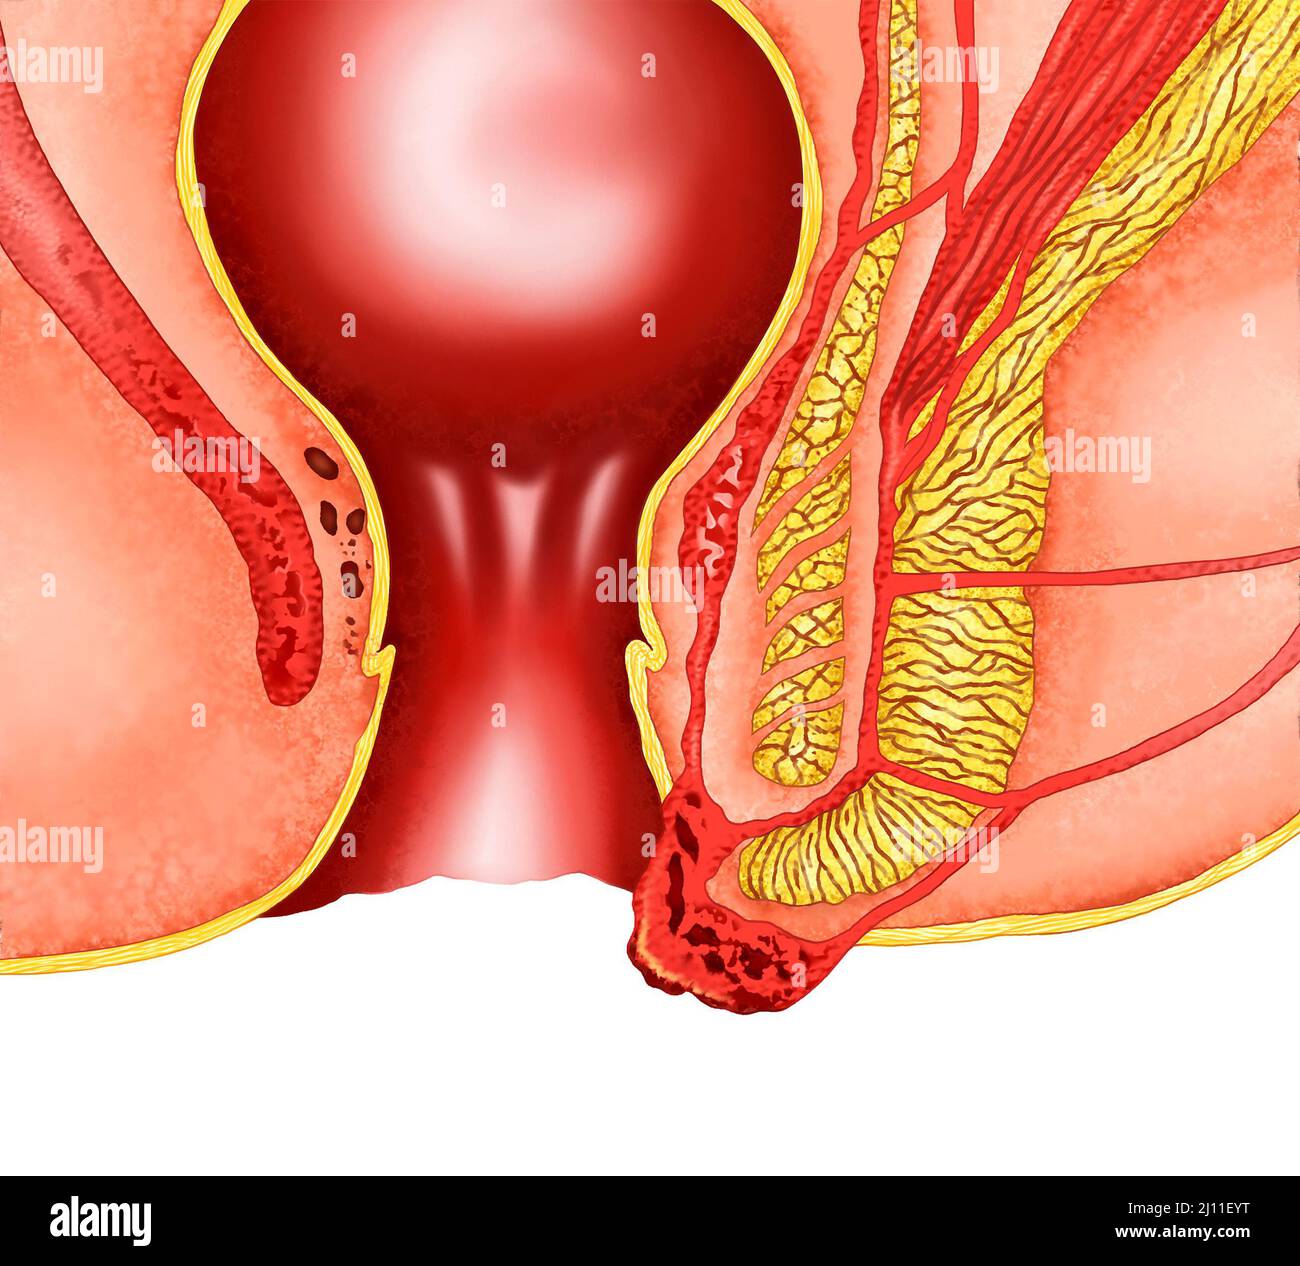 illustration réaliste de l'anatomie des hémorroïdes Banque D'Images